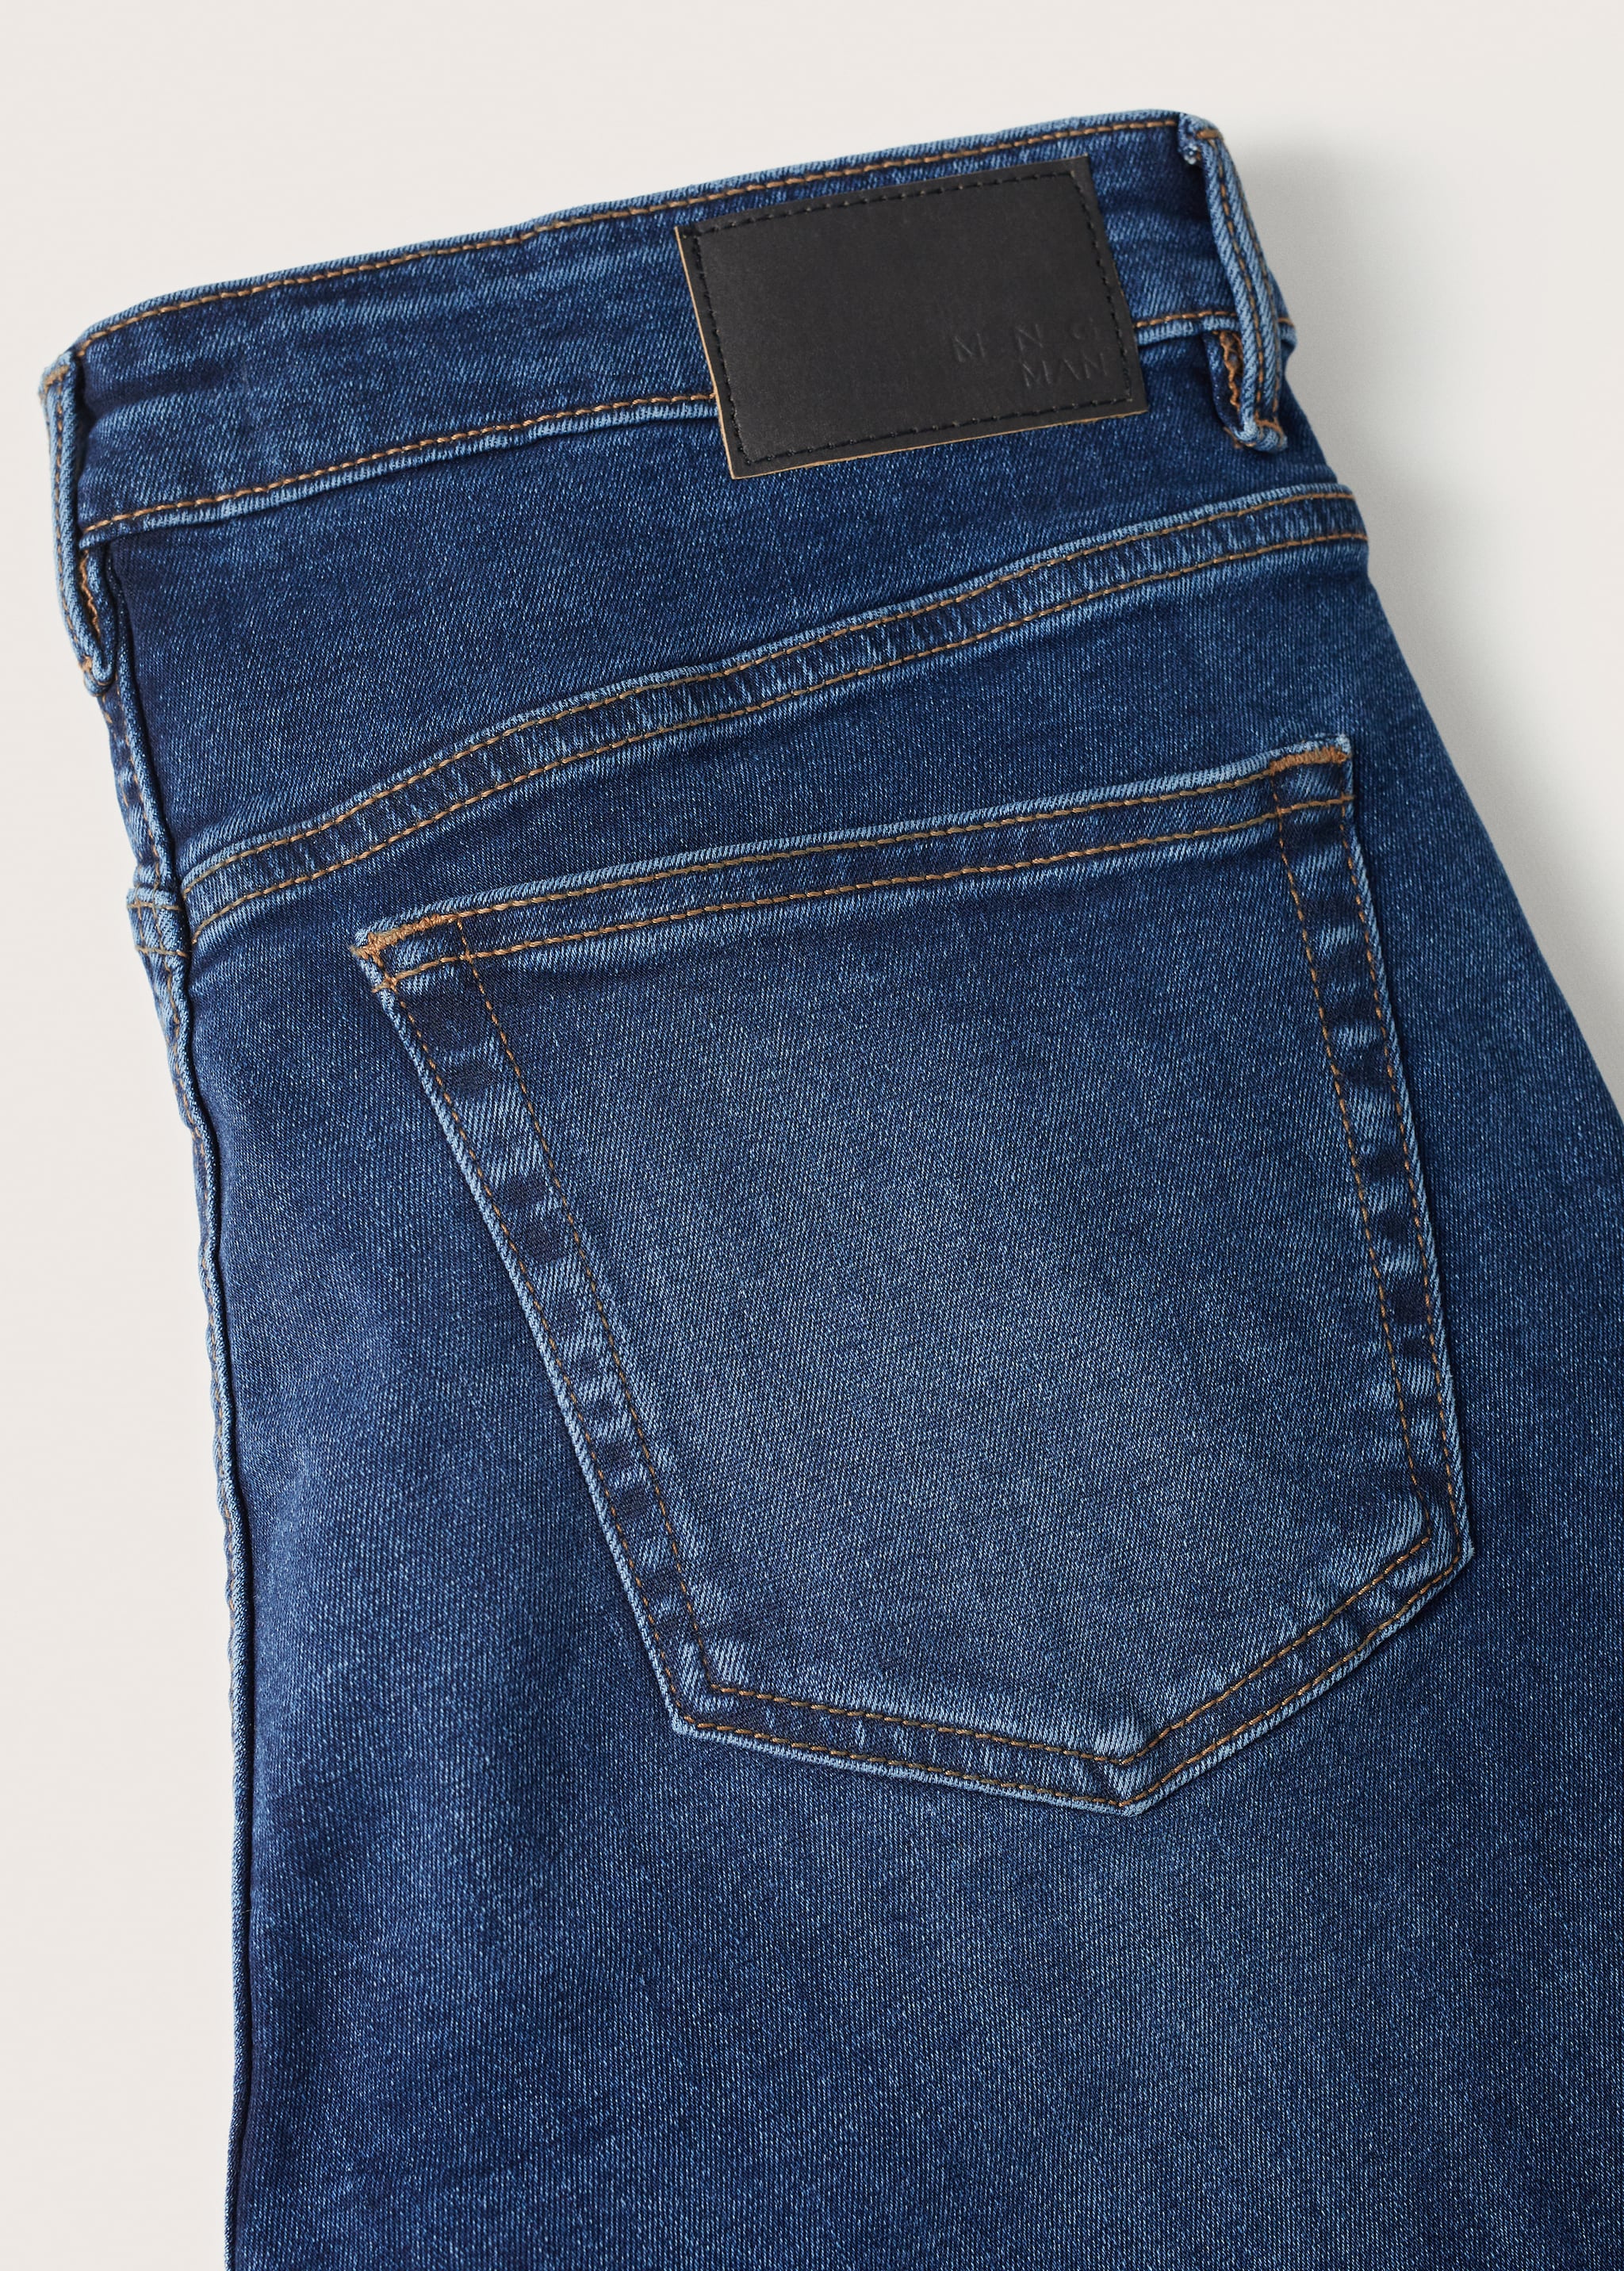 Jeans Jude skinny lavado oscuro - Detalle del artículo 8